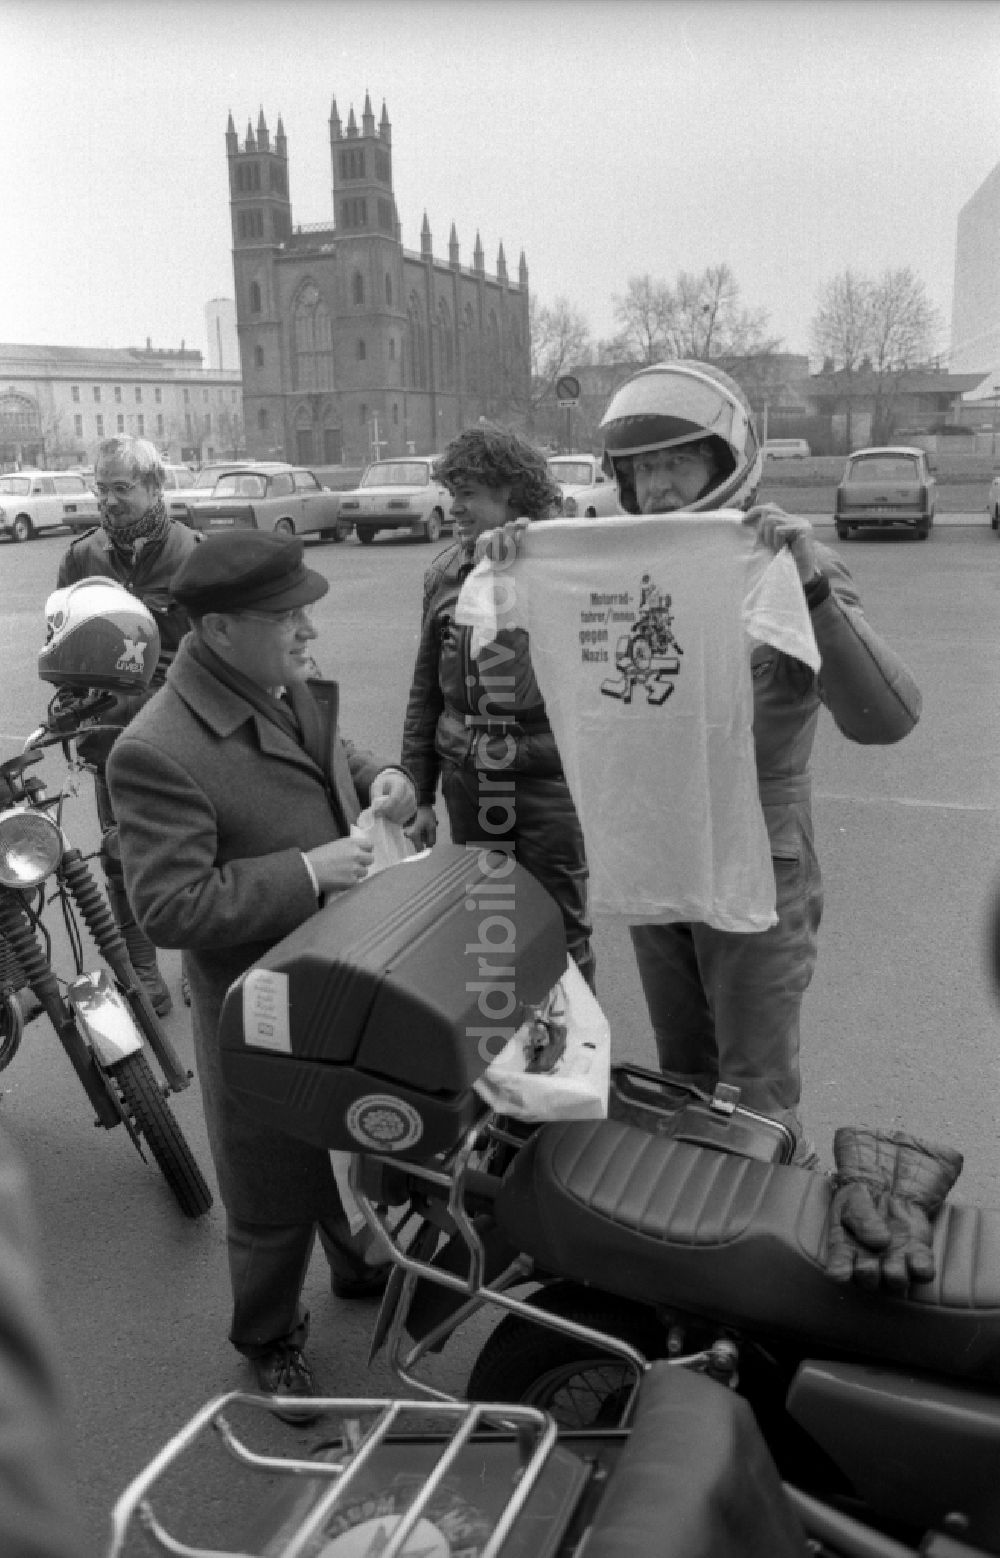 DDR-Fotoarchiv: Berlin - Politiker Gregor Gysi mit einem Motorrad MZ in Berlin auf dem Gebiet der ehemaligen DDR, Deutsche Demokratische Republik